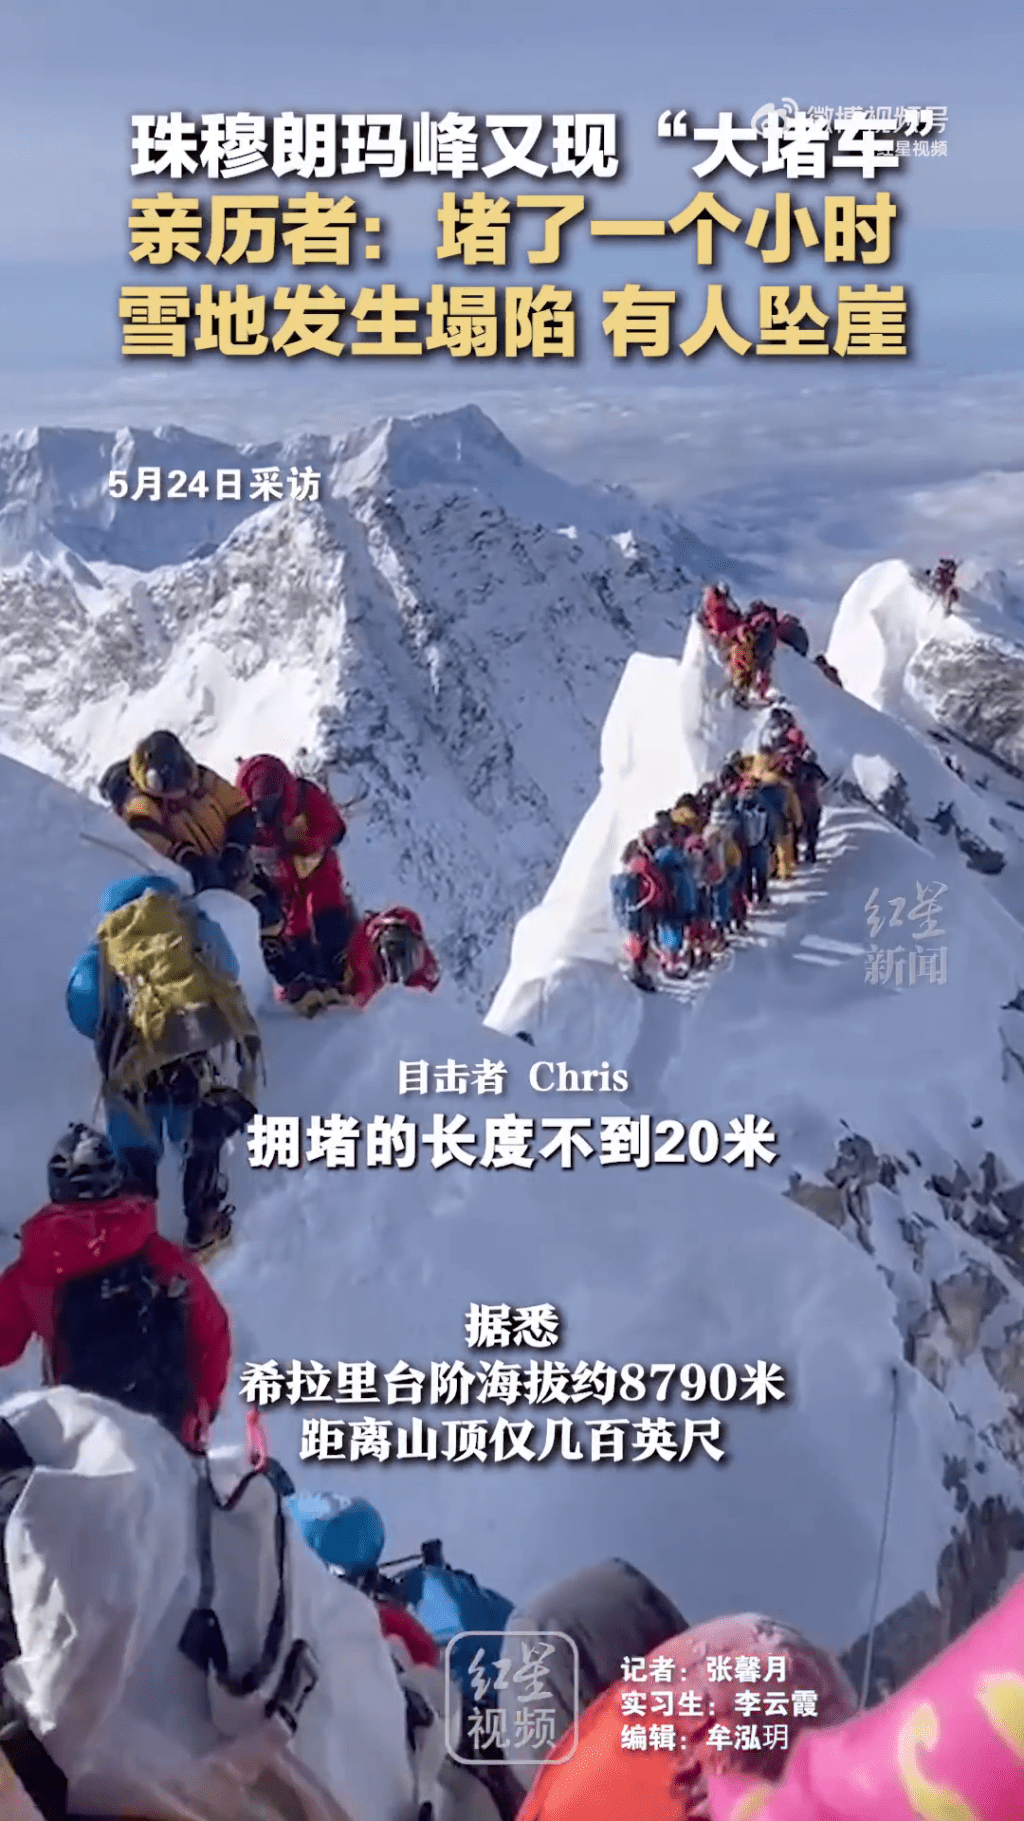 珠峰有登山者稱有人墮崖。